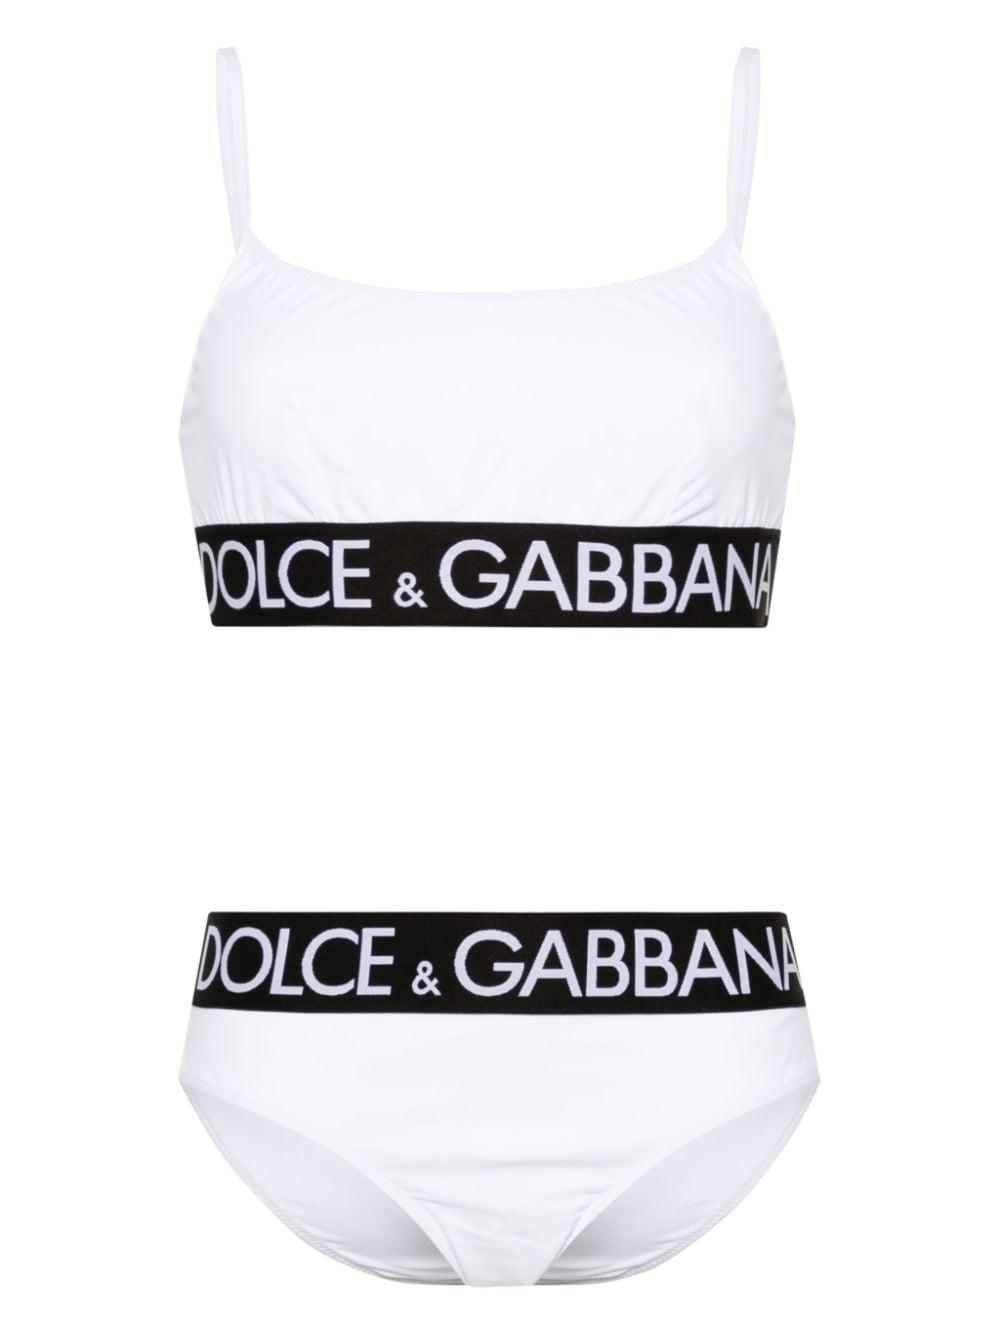 Dolce & Gabbana logo band crop top